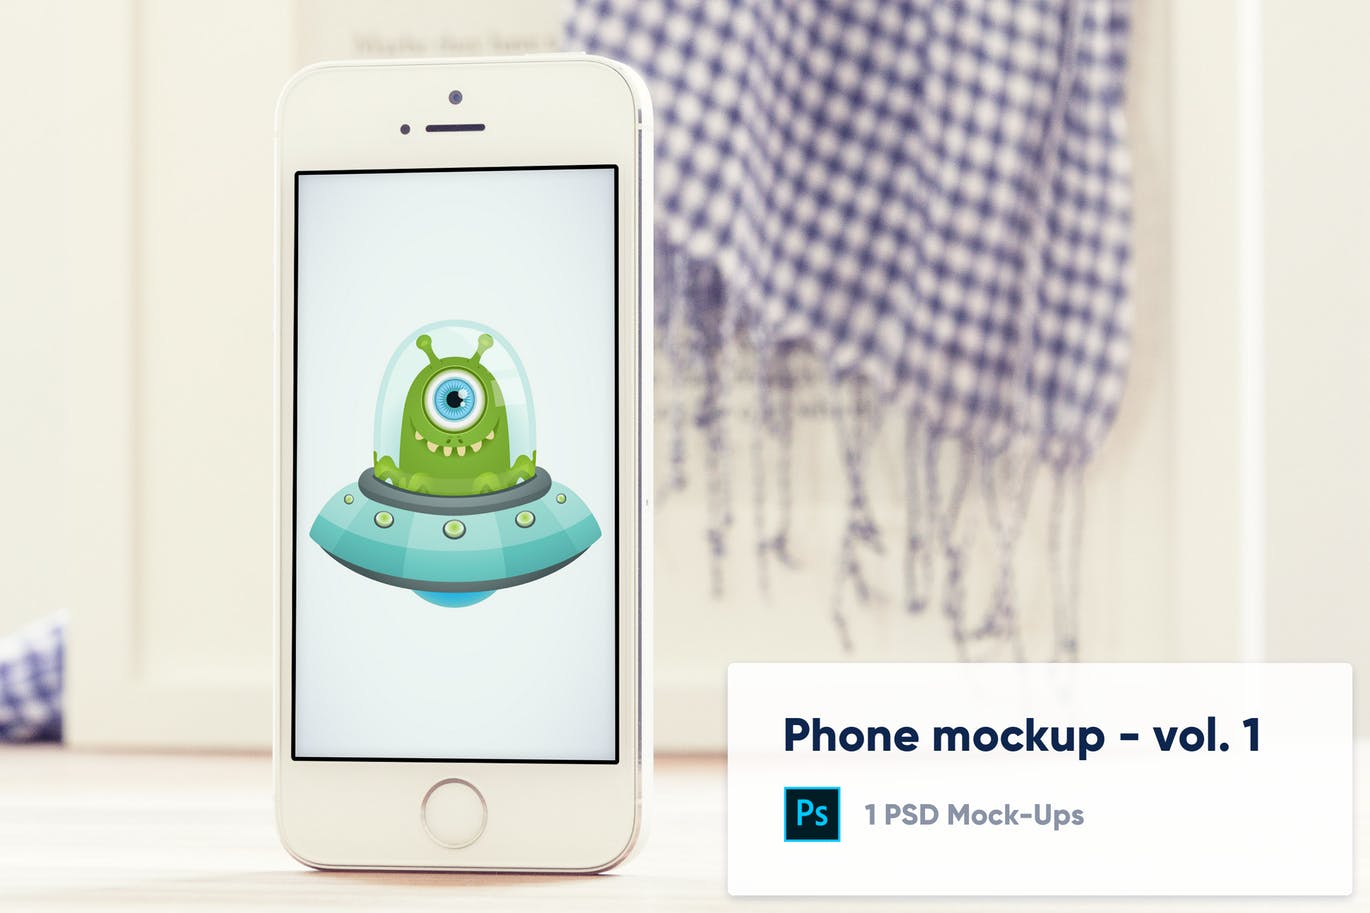 模糊背景实体键iPhone手机UI设计预览第一素材精选样机v1 Phone Mockup with blurred background – Vol.1插图